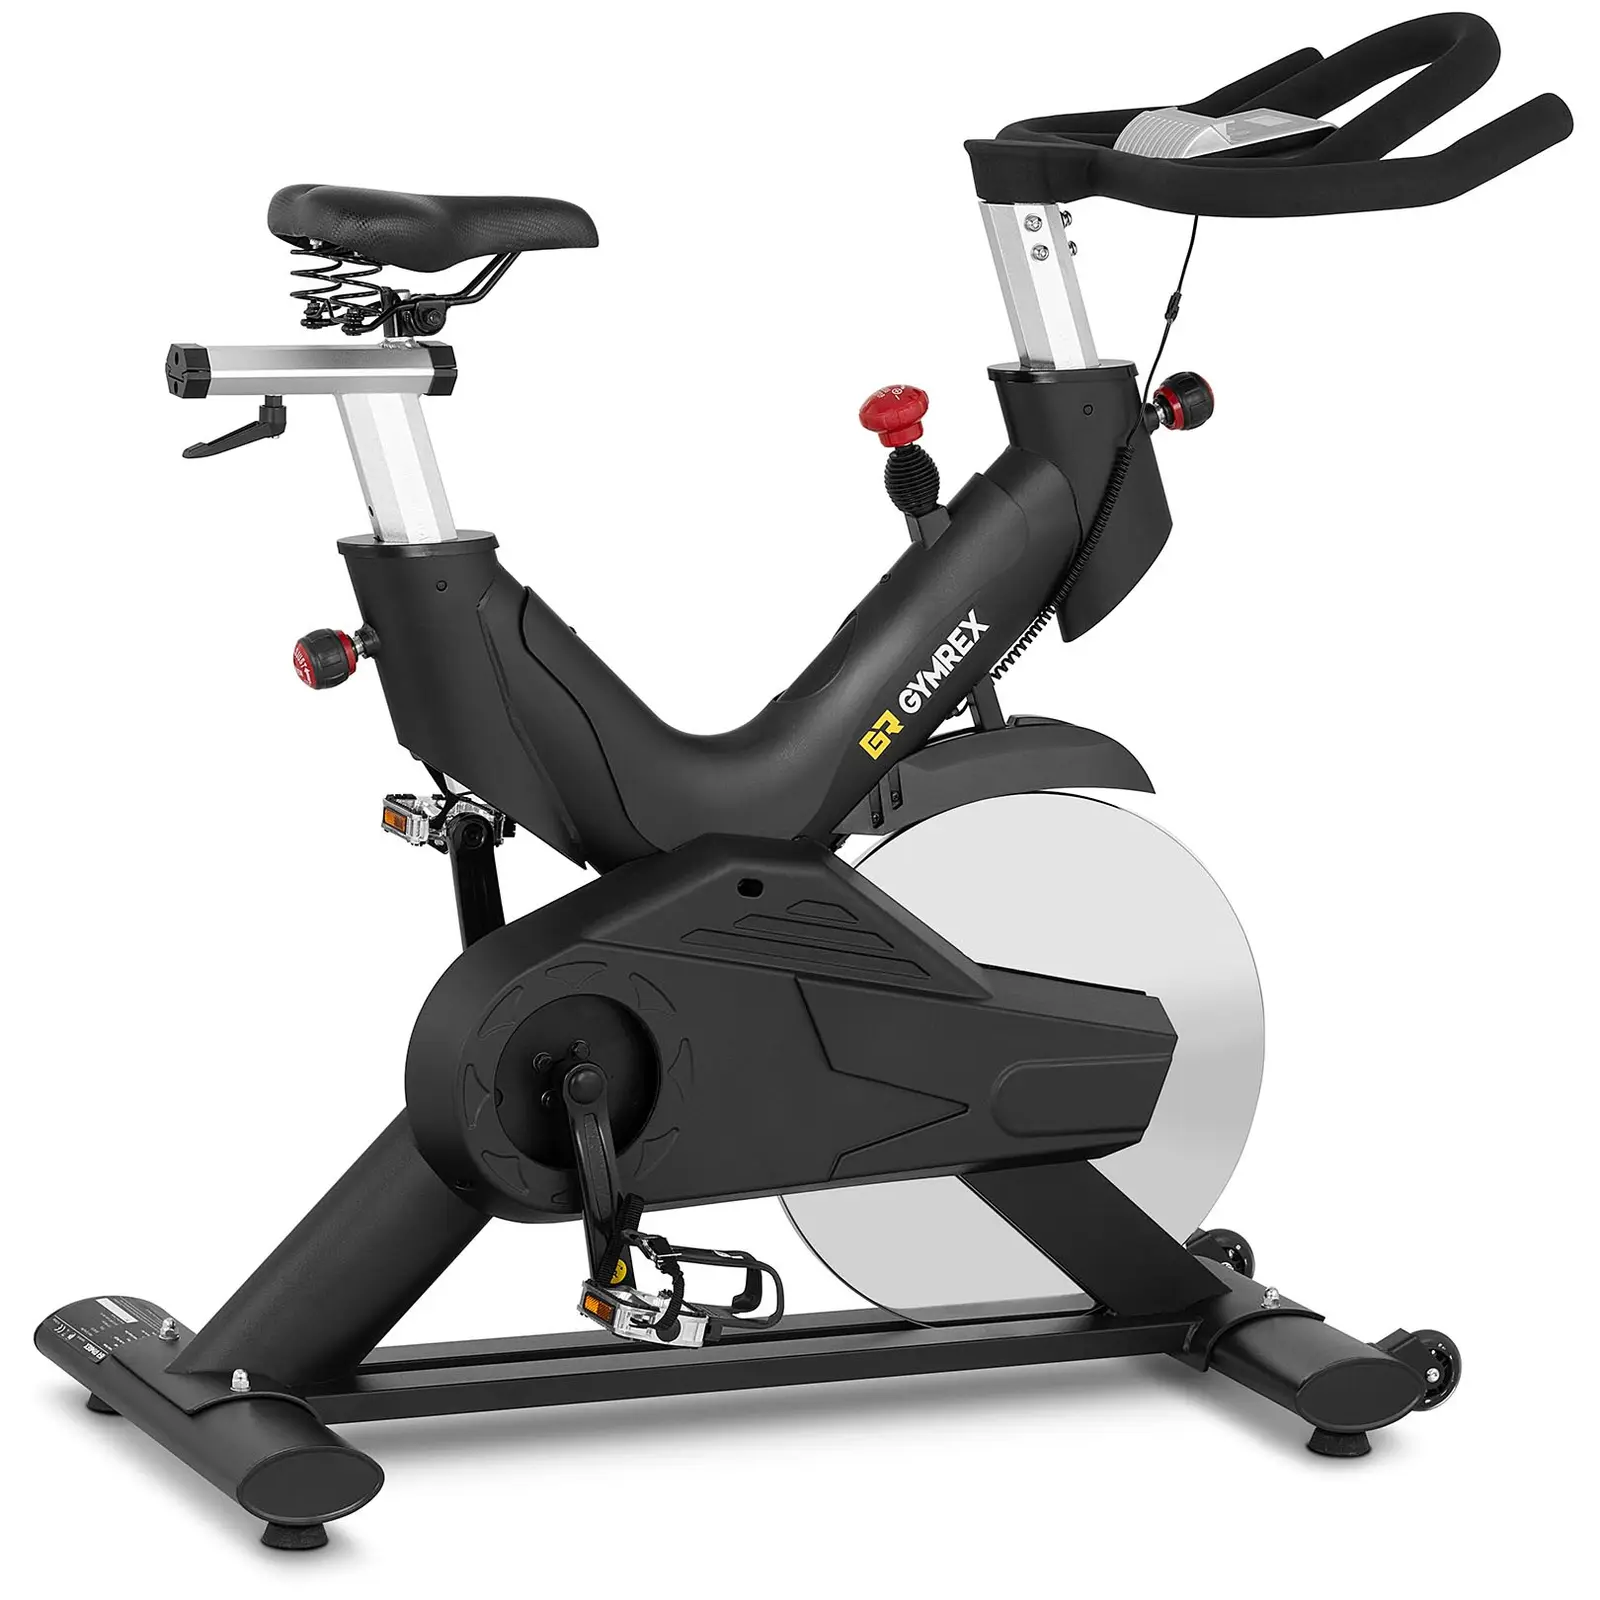 Motionscykel - Svänghjul 20 kg - Upp till 120 kg - LCD